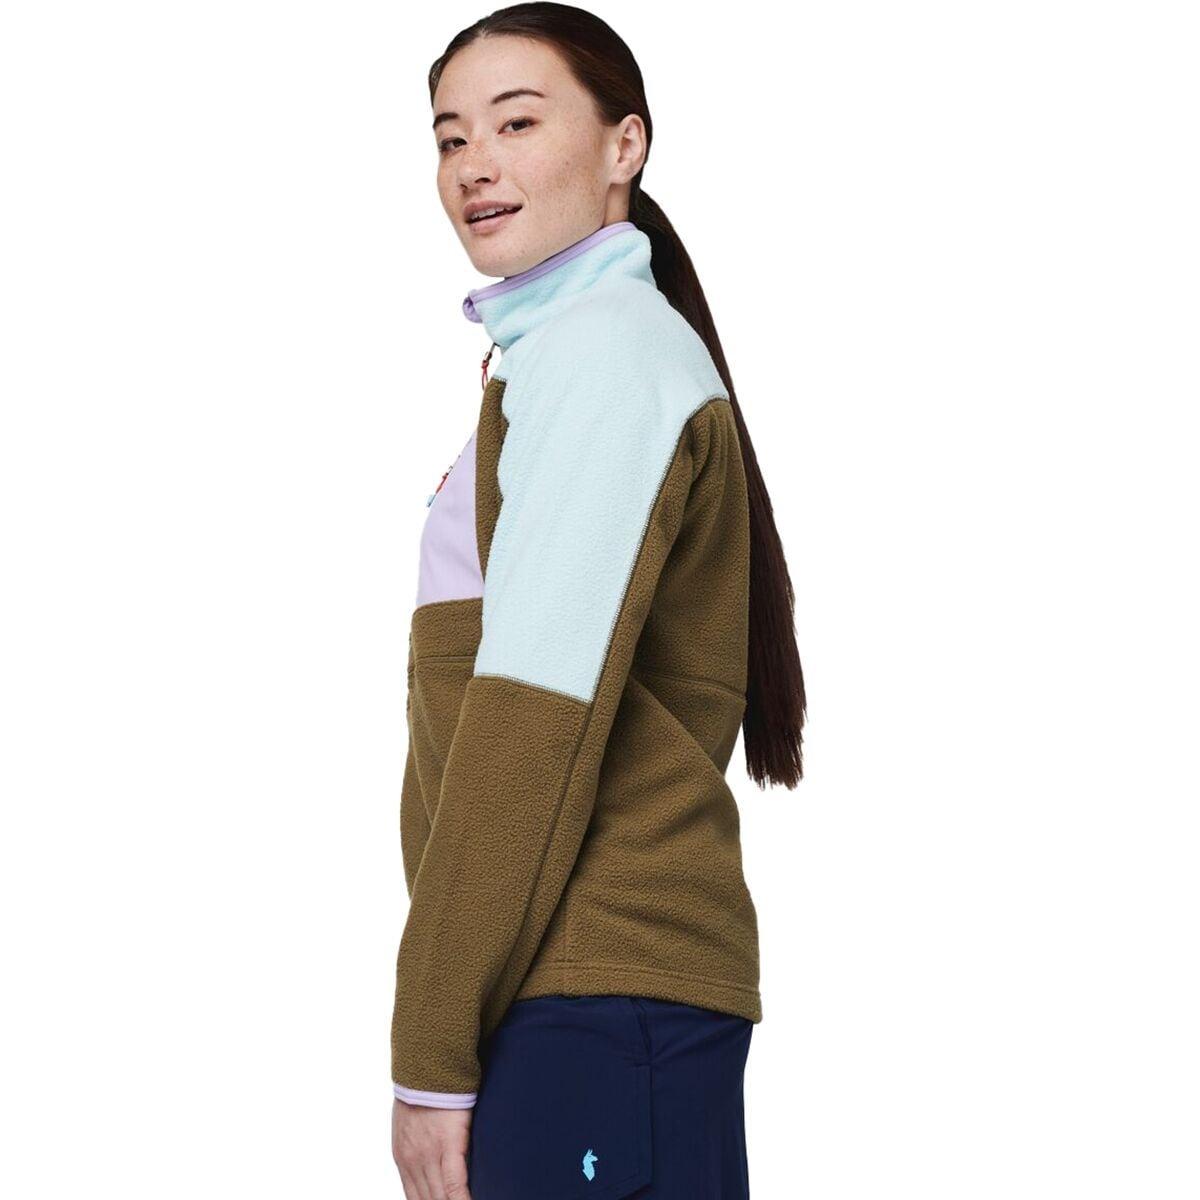 Cotopaxi Abrazo Half-Zip Fleece Jacket - Women's